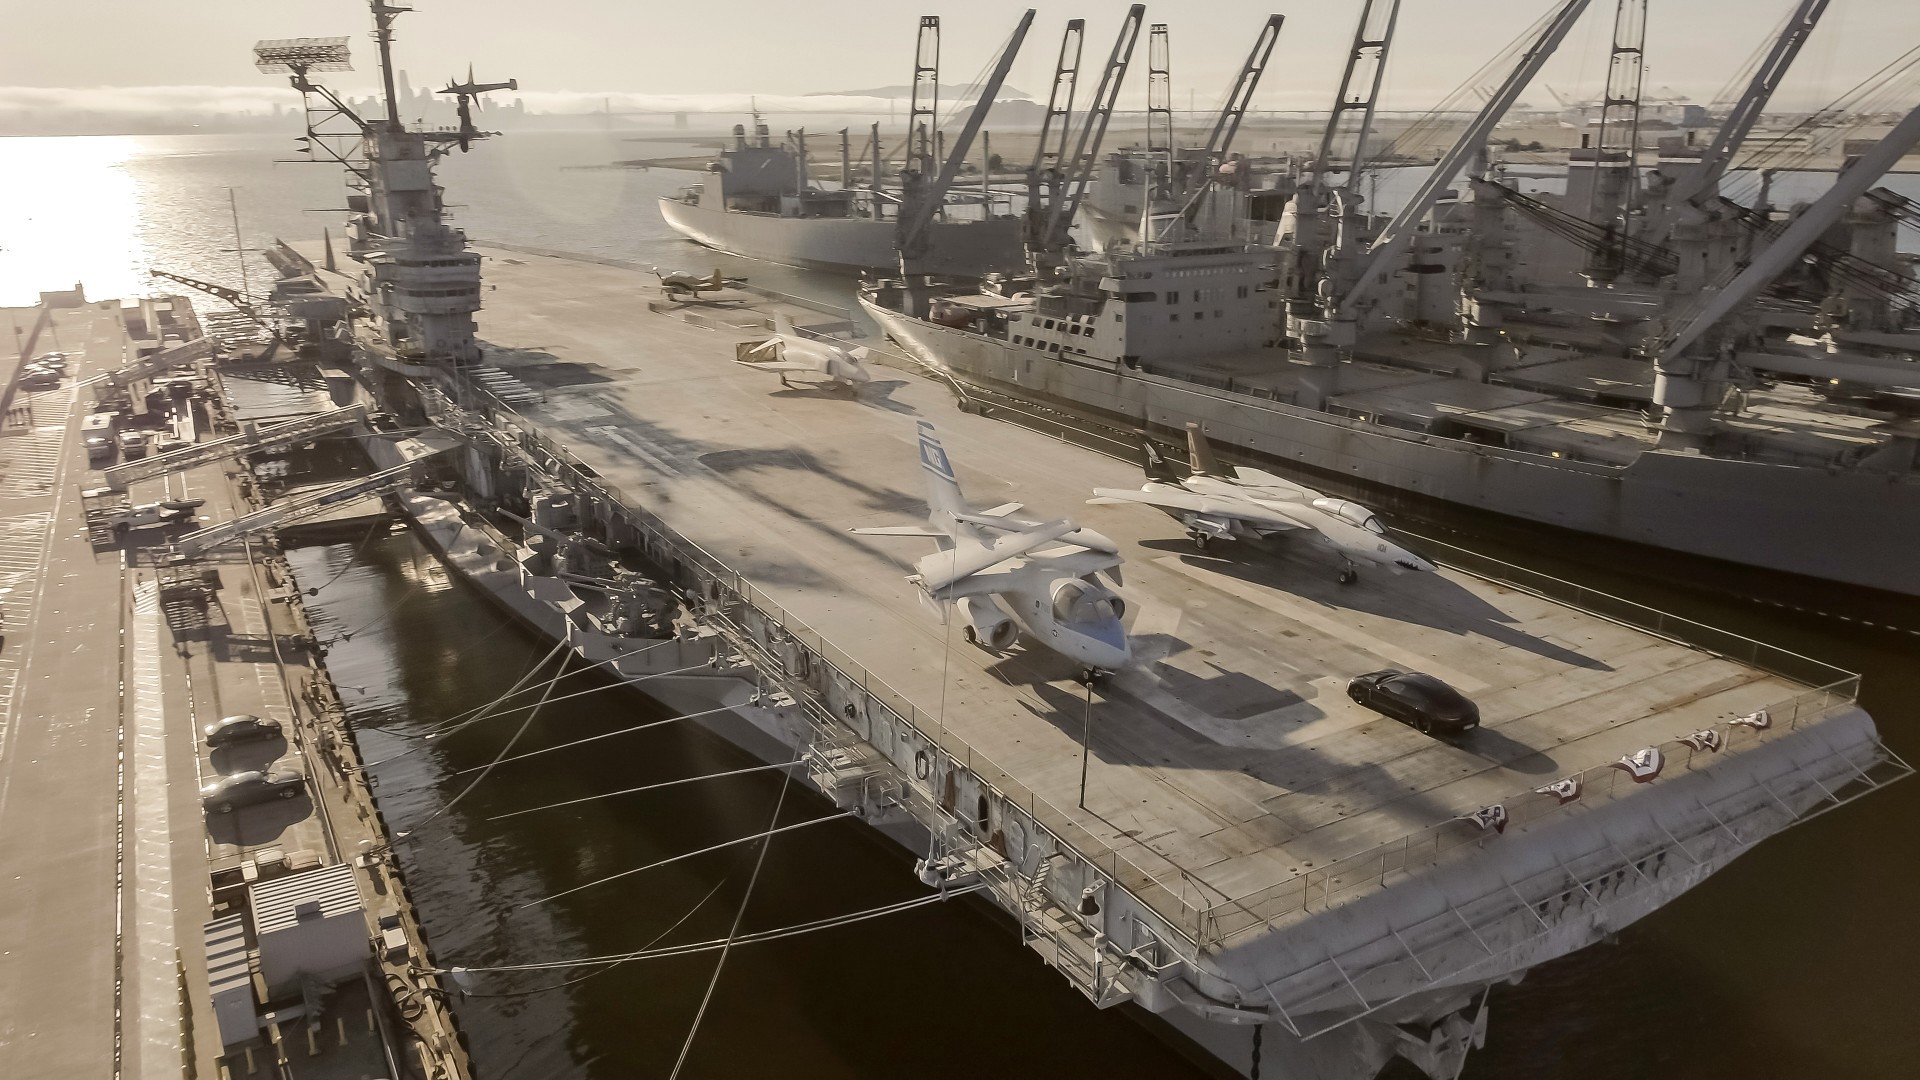 2020 Porsche Taycan  -  0-90-0 mph stunt on USS Hornet aircraft carrier